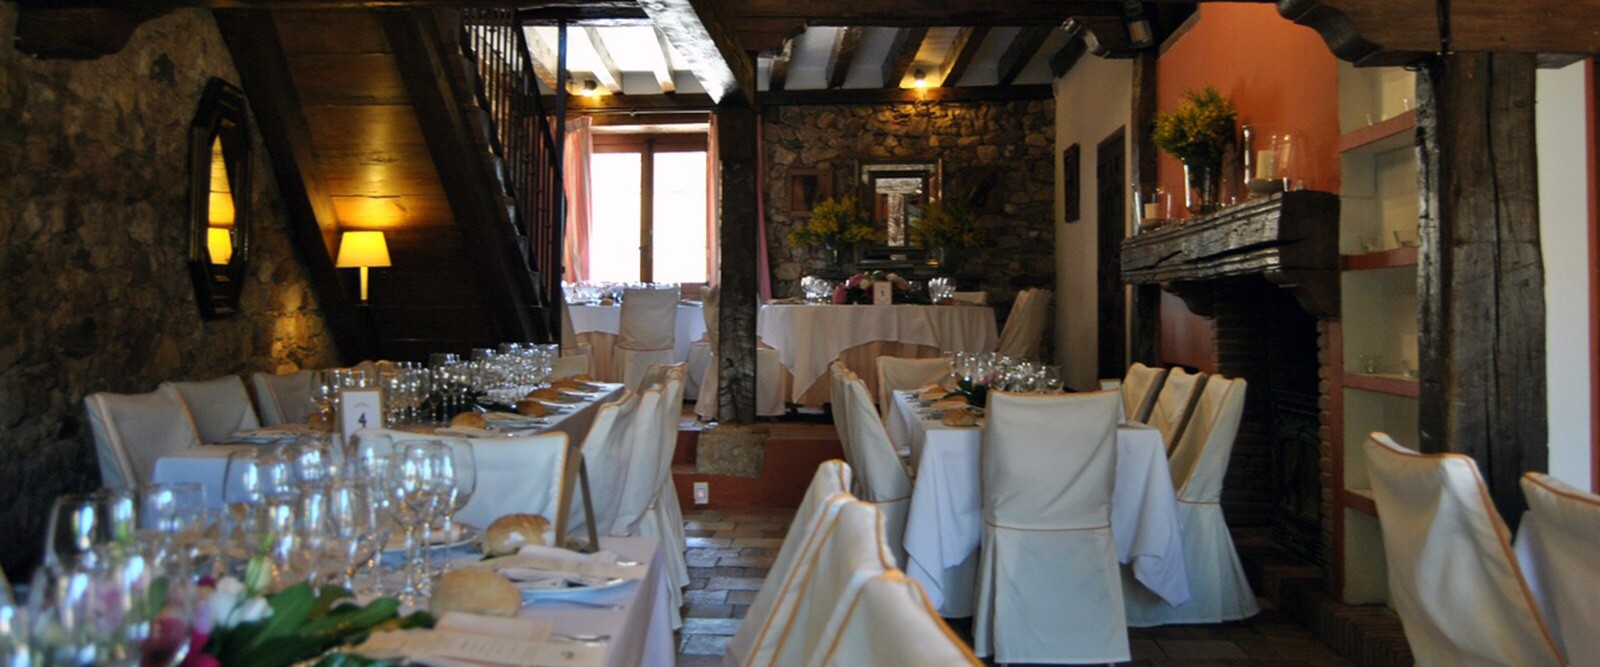 Comedor celebraciones - Restaurante El Soportal en Pedraza, Segovia